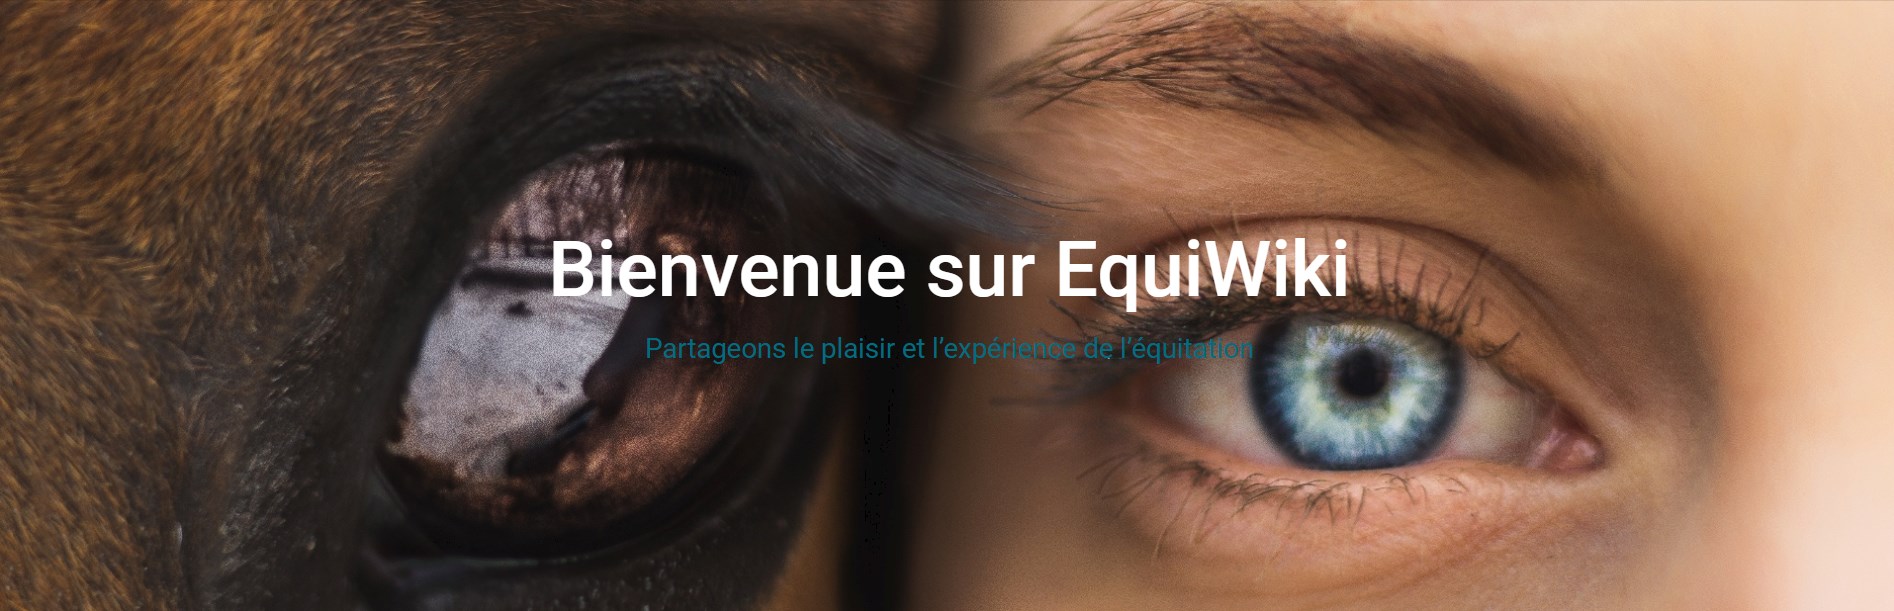 example bannière Equiwiki - Partage équitation (2020-04-22) - identité de marque créée par DailyBooster